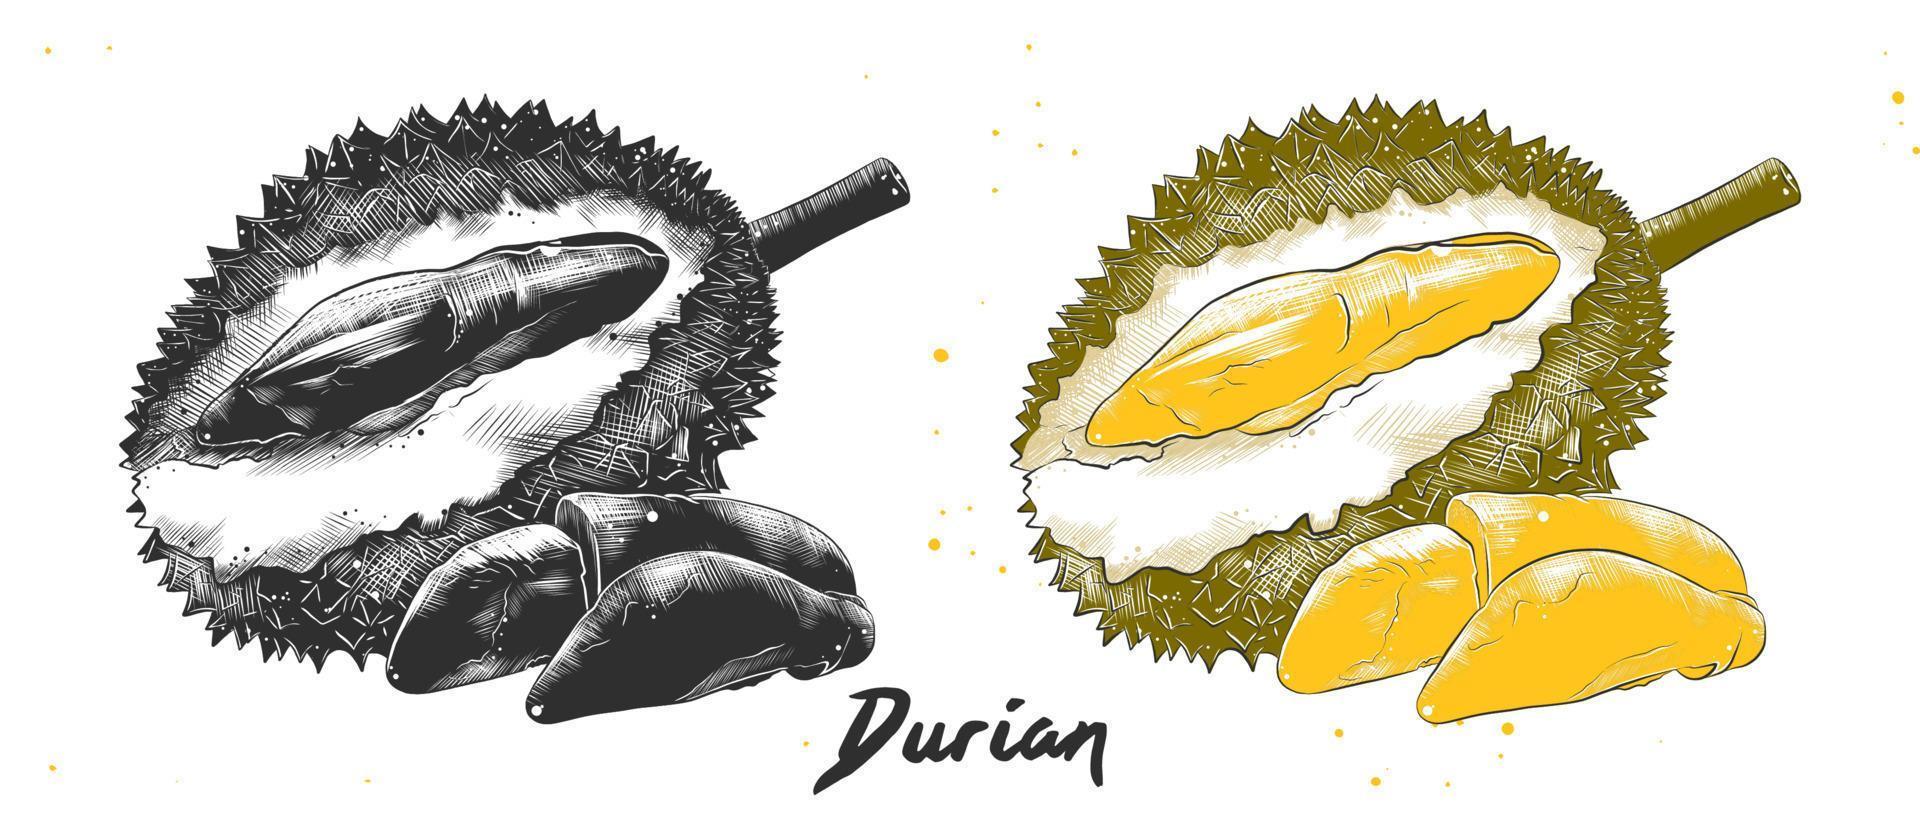 illustration de style gravé de vecteur pour les affiches, la décoration et l'impression. croquis dessiné à la main de durian en monochrome et coloré. dessin détaillé de nourriture végétarienne.